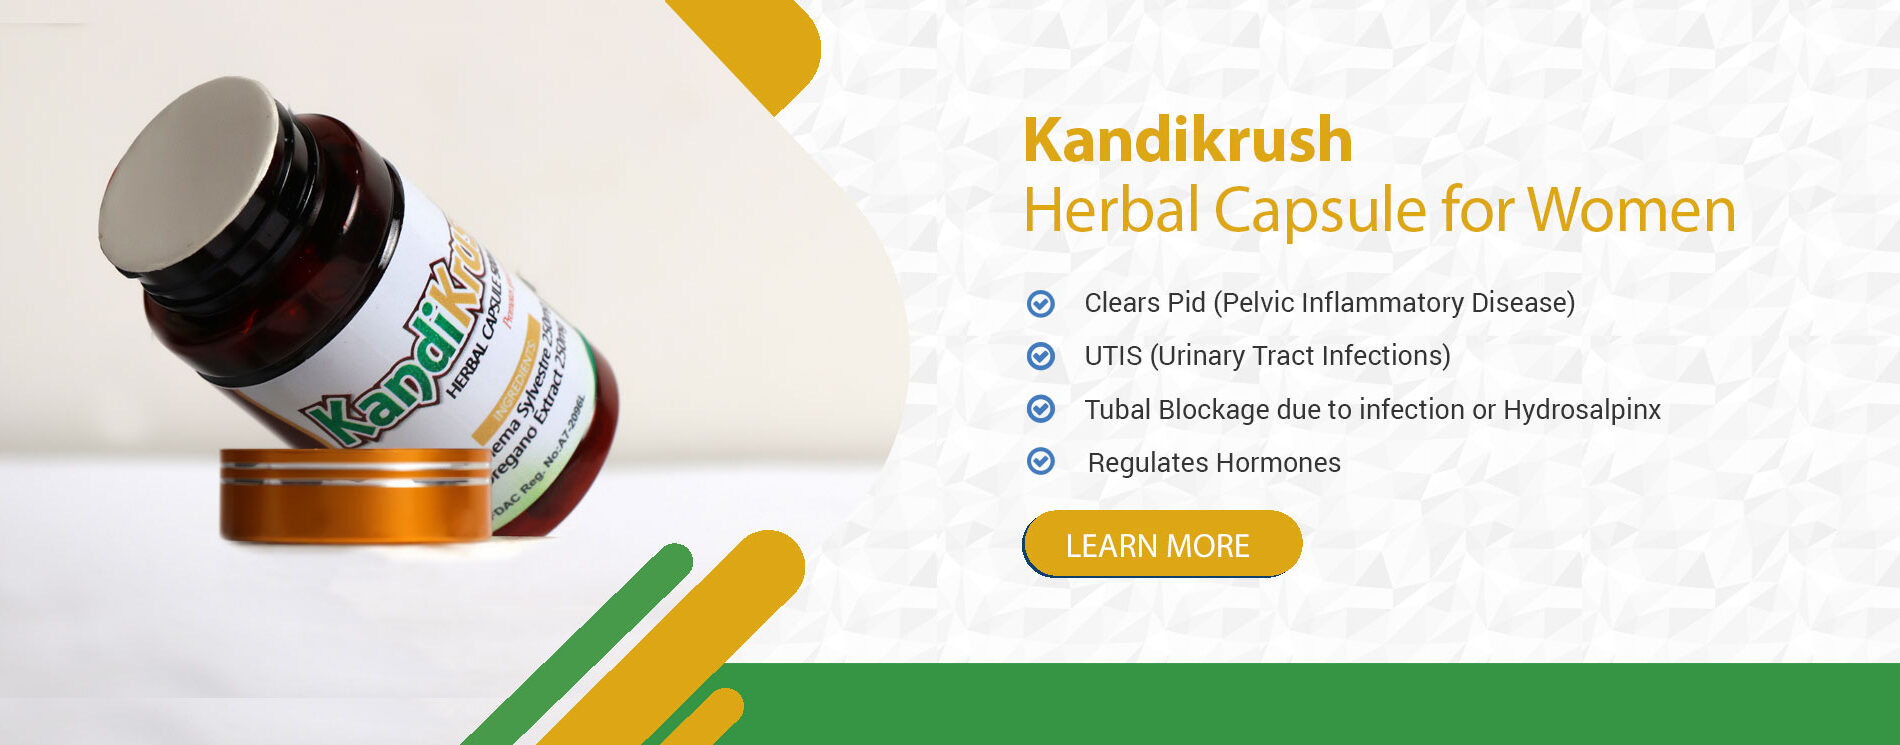 Kandikrush-Herbal-Capsule-For-Women